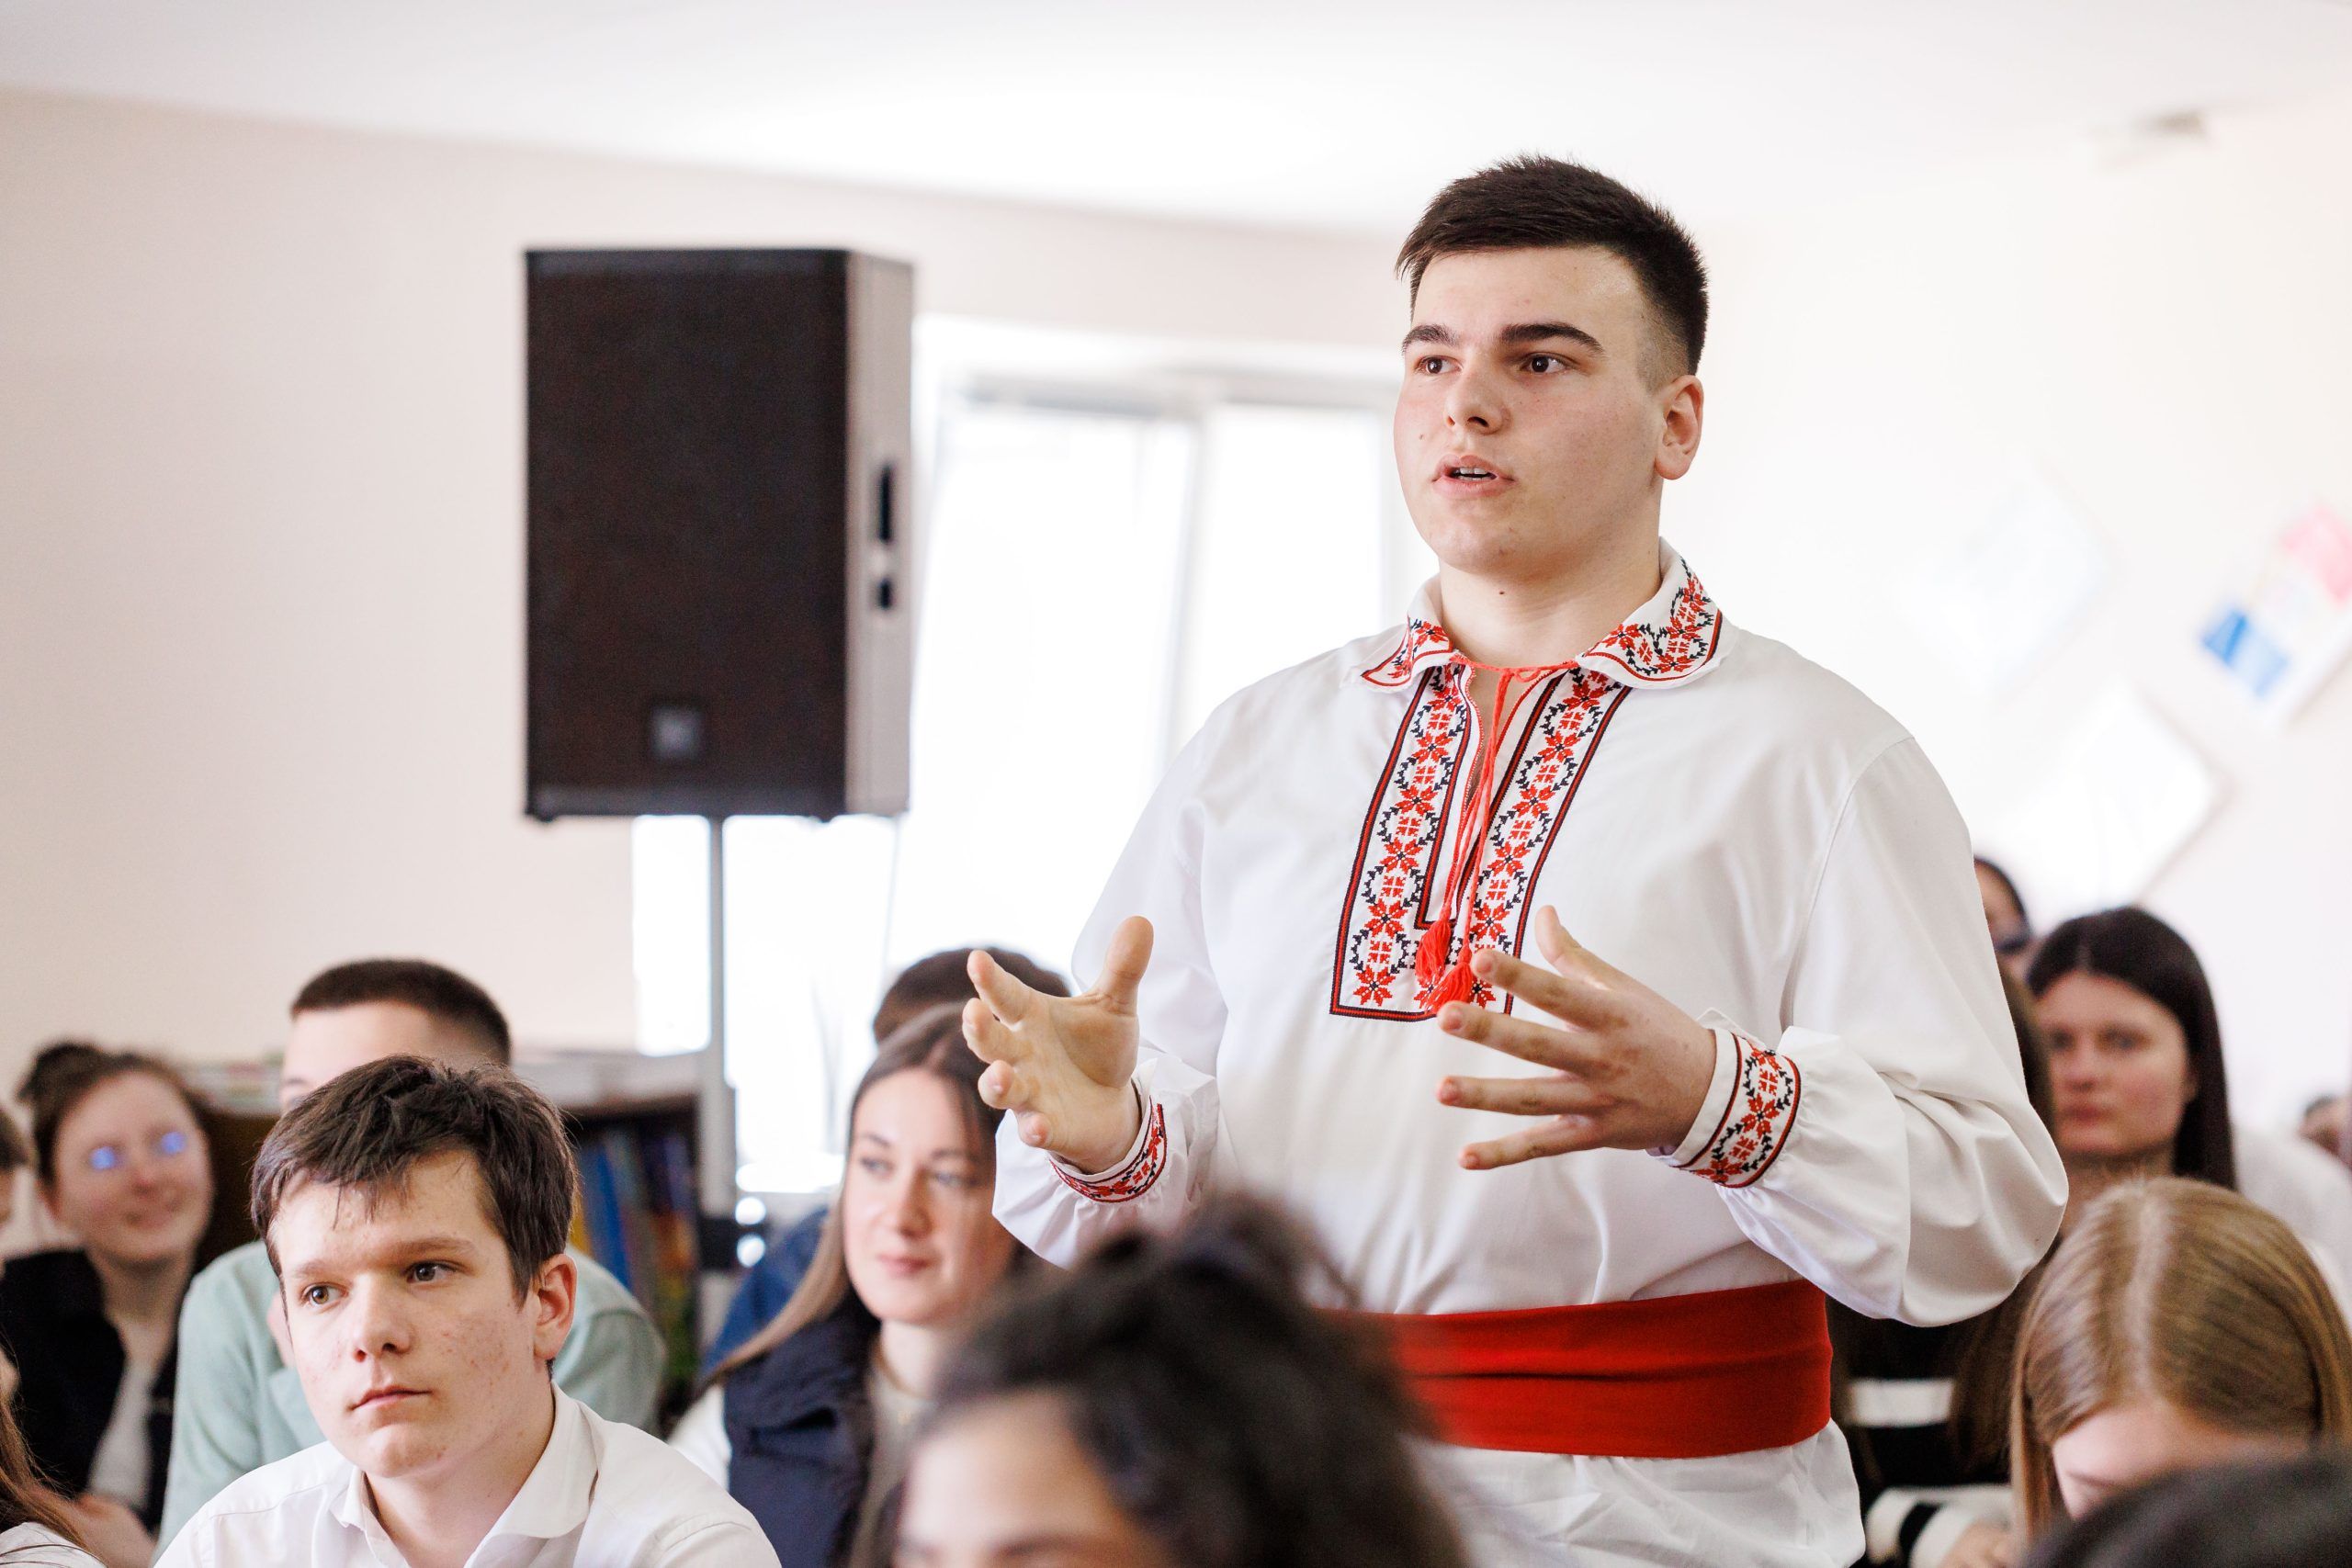 alături de Ambasadorul UE la Chișinău, Jānis Mažeiks, am ajuns la Liceul Teoretic din Varnița, unde peste 300 de elevi vin zilnic să învețe, inclusiv din stânga Nistrului, Bender. Am discutat cu tinerii și profesorii despre posibilitățile de educație, schimb de experiență cu țările europene, dar și despre tot traseul pe care Moldova deja l-a trecut în calea sa spre Uniunea Europeană.